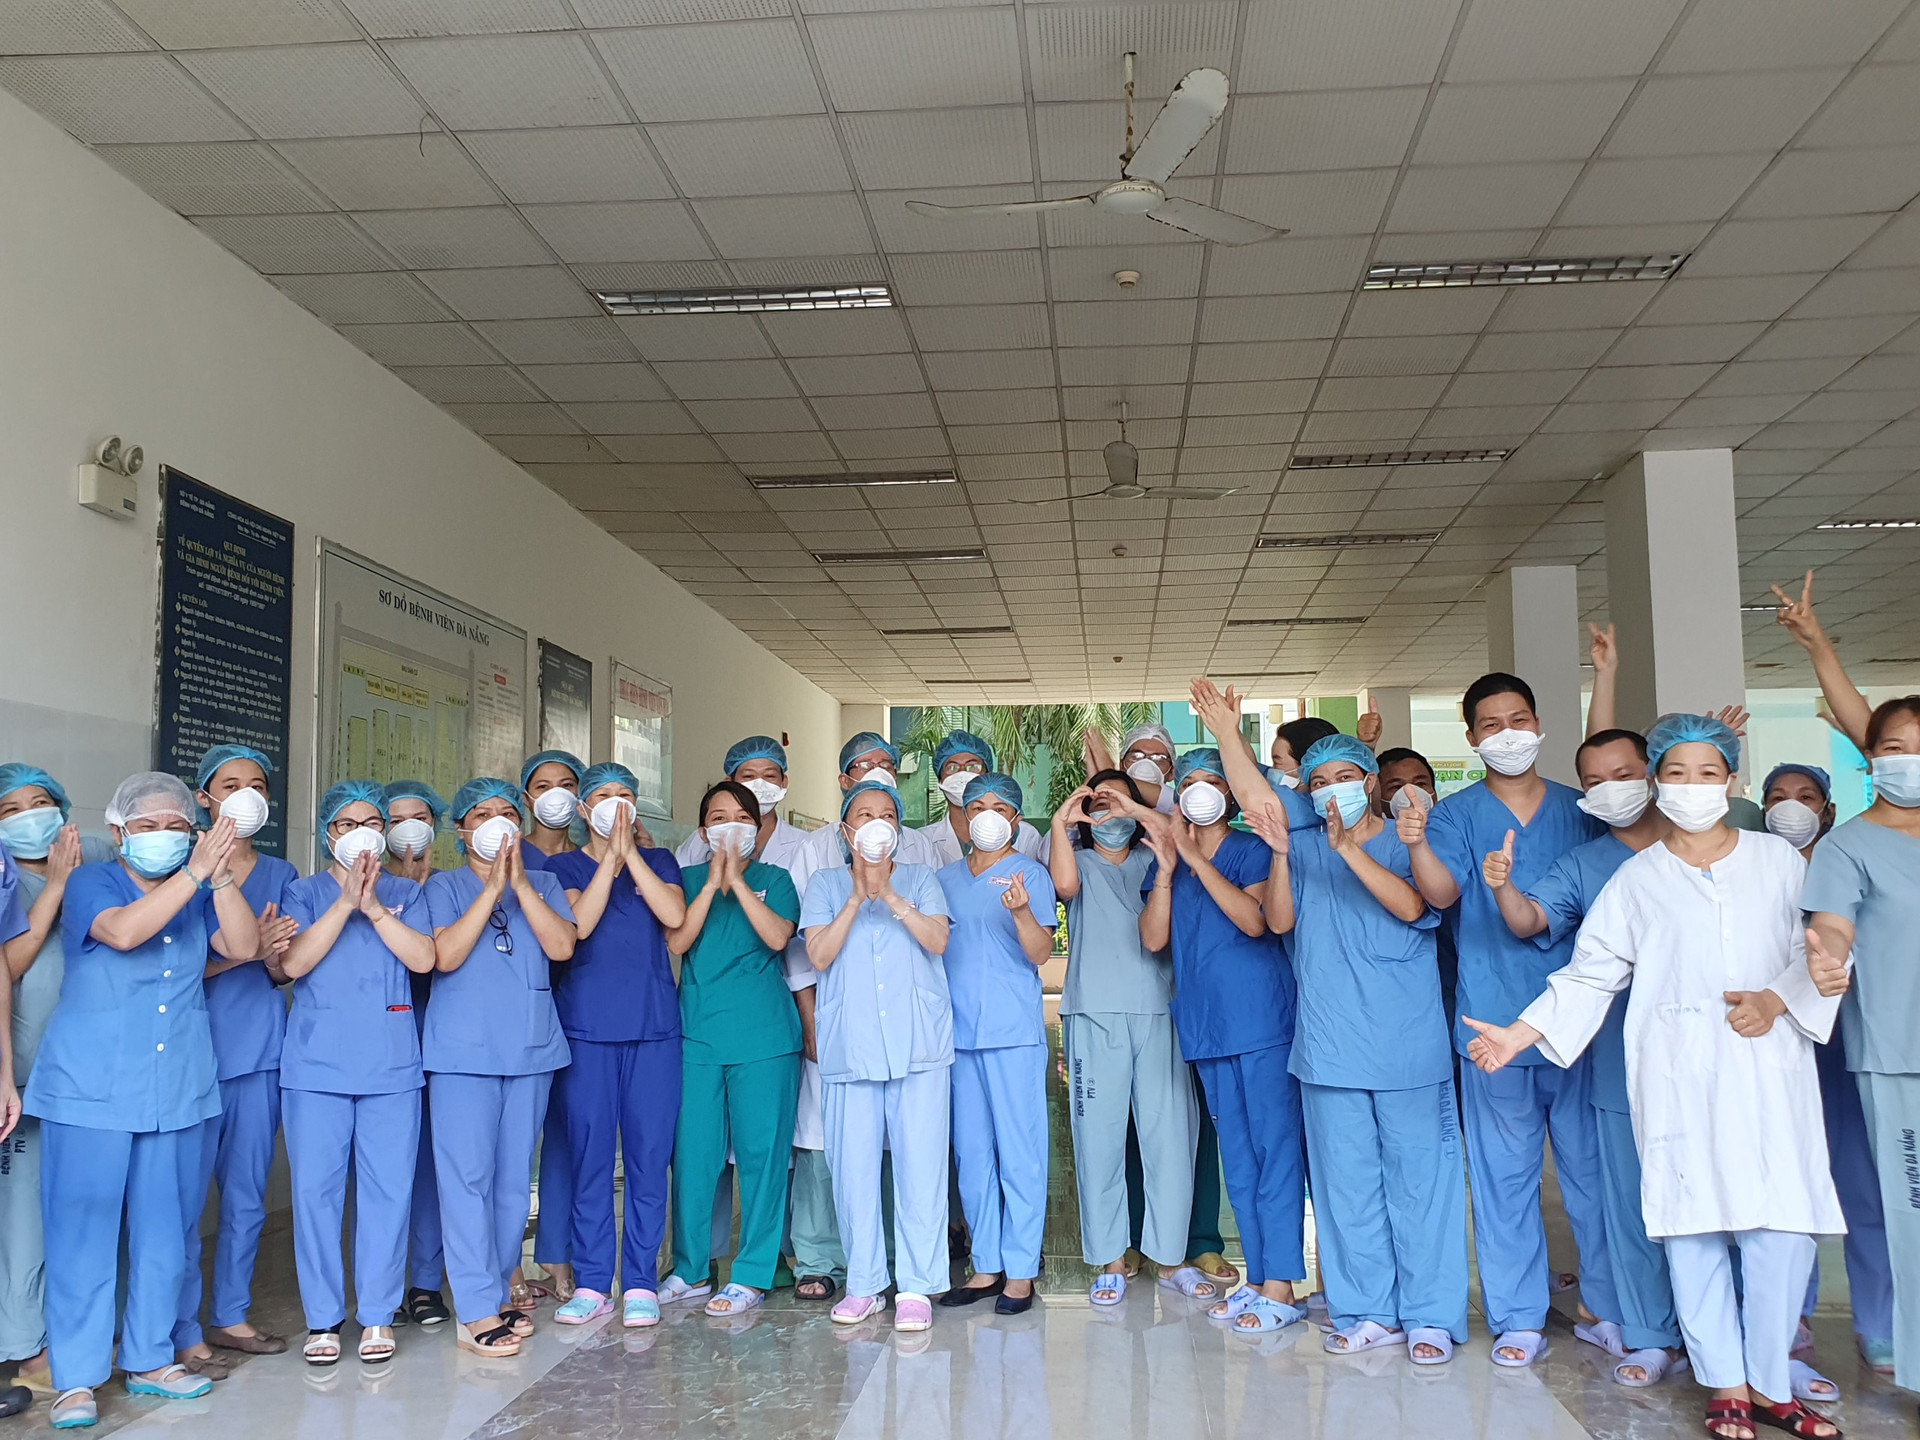 Dỡ bỏ lệnh phong tỏa Bệnh viện Đà Nẵng